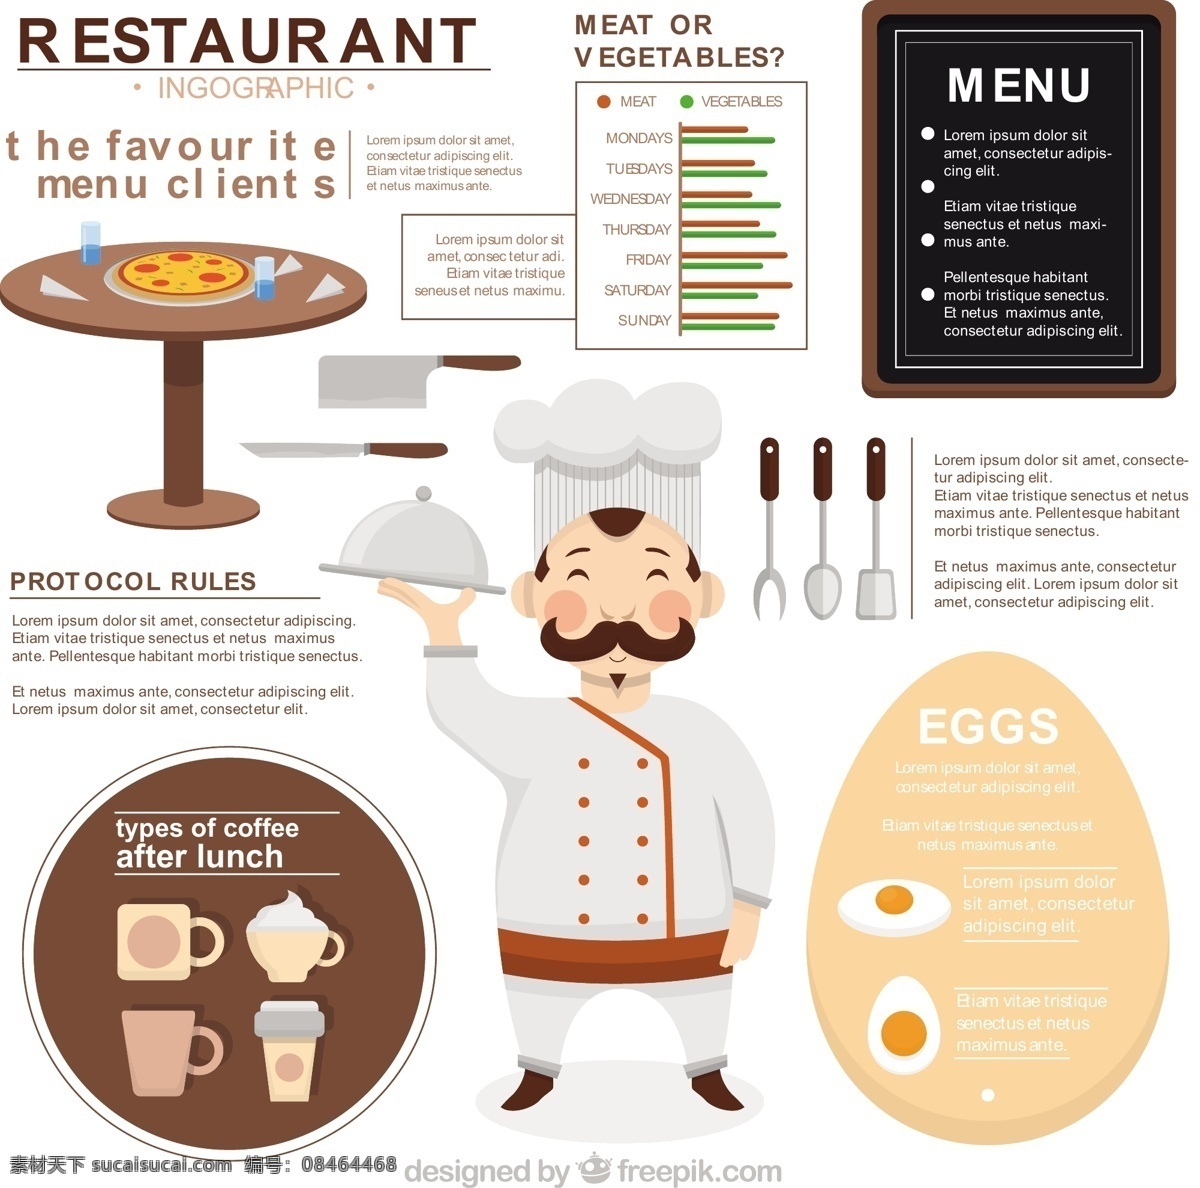 餐厅信息图表 食品 菜单 餐厅 蛋糕 家庭 模板 厨房 厨师 糕点店 表 图表 图形 烹饪 有机 图 信息 流程 最新矢量素材